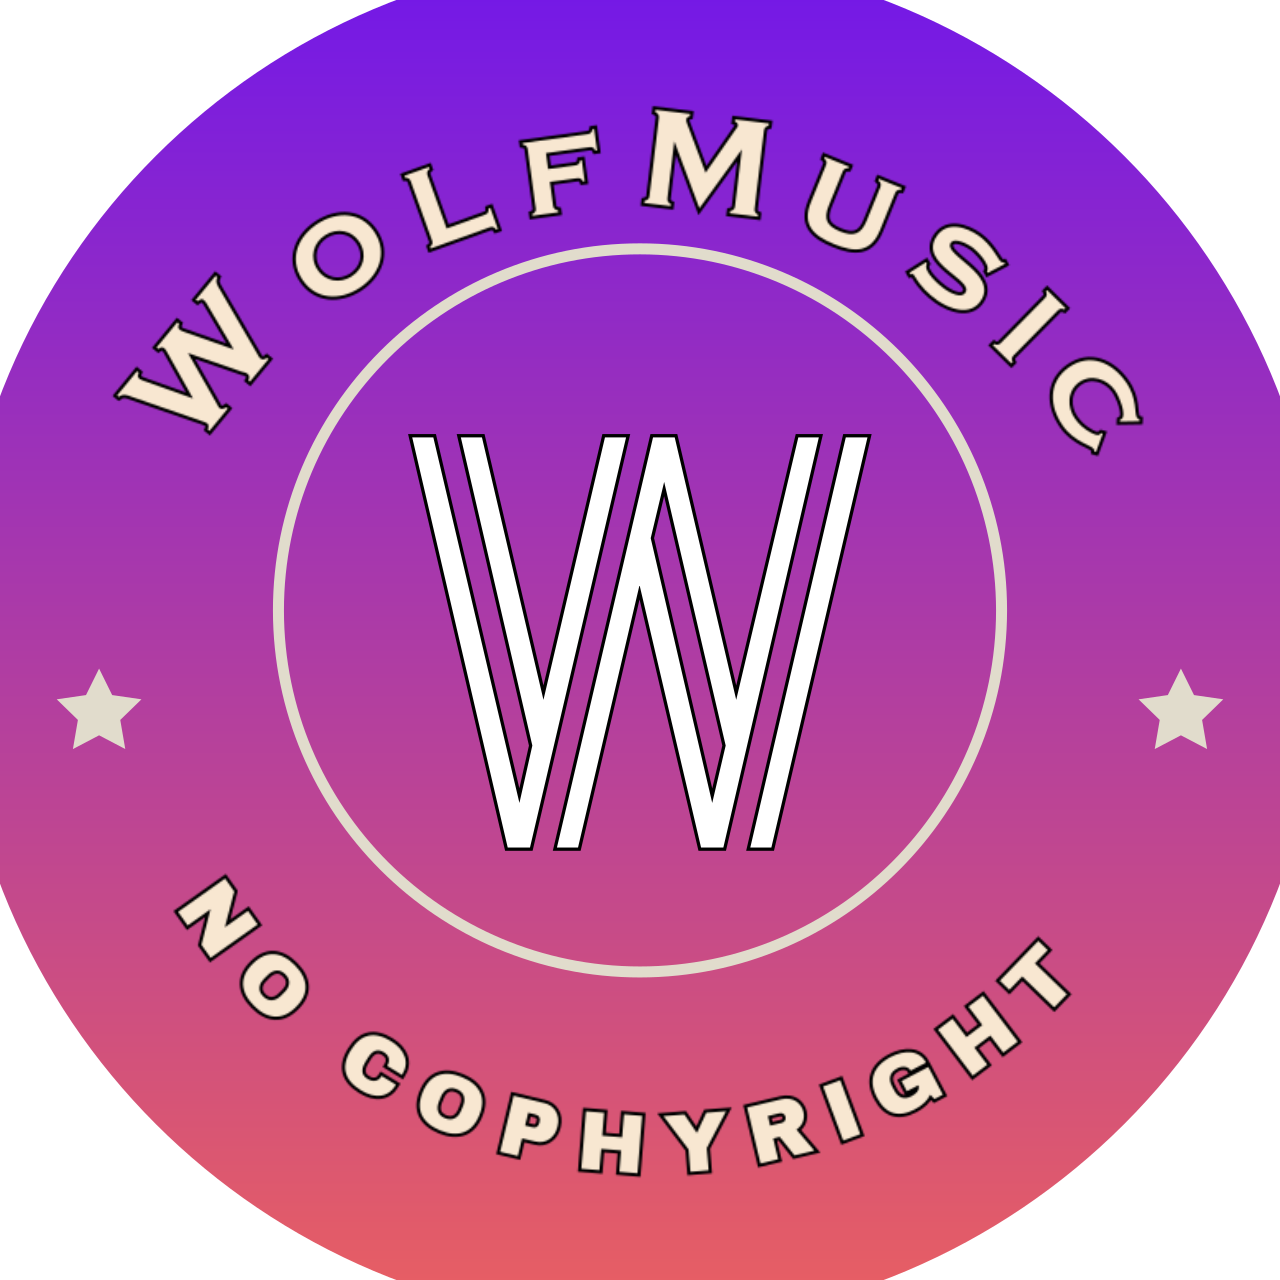 WolfMusic's logo